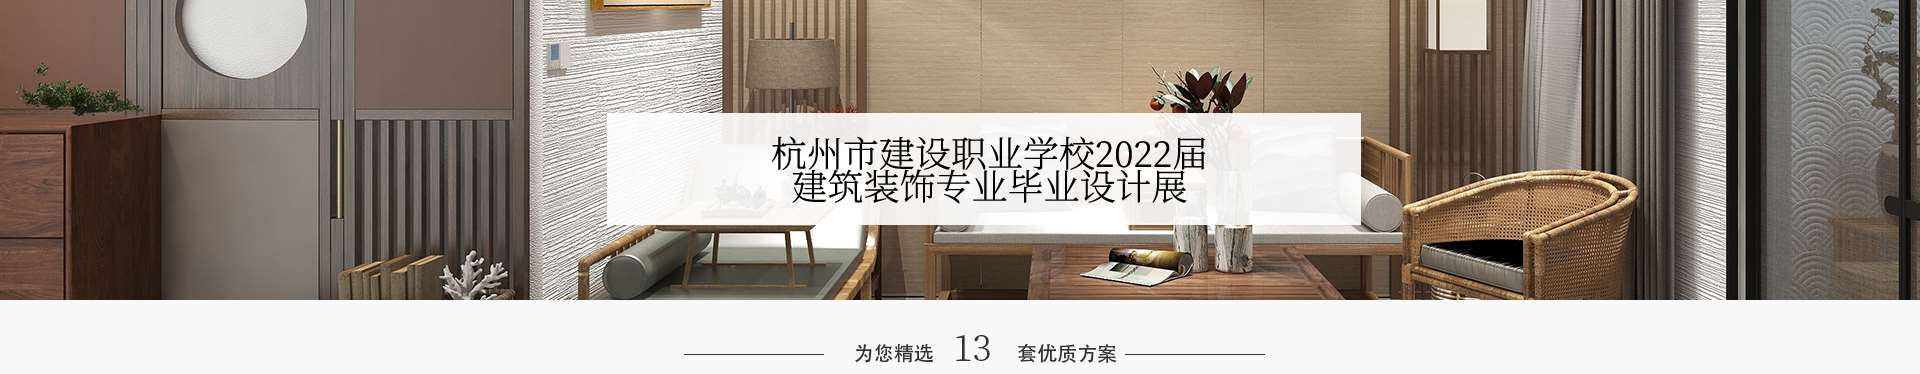 杭州市建设职业学校2022年作品展